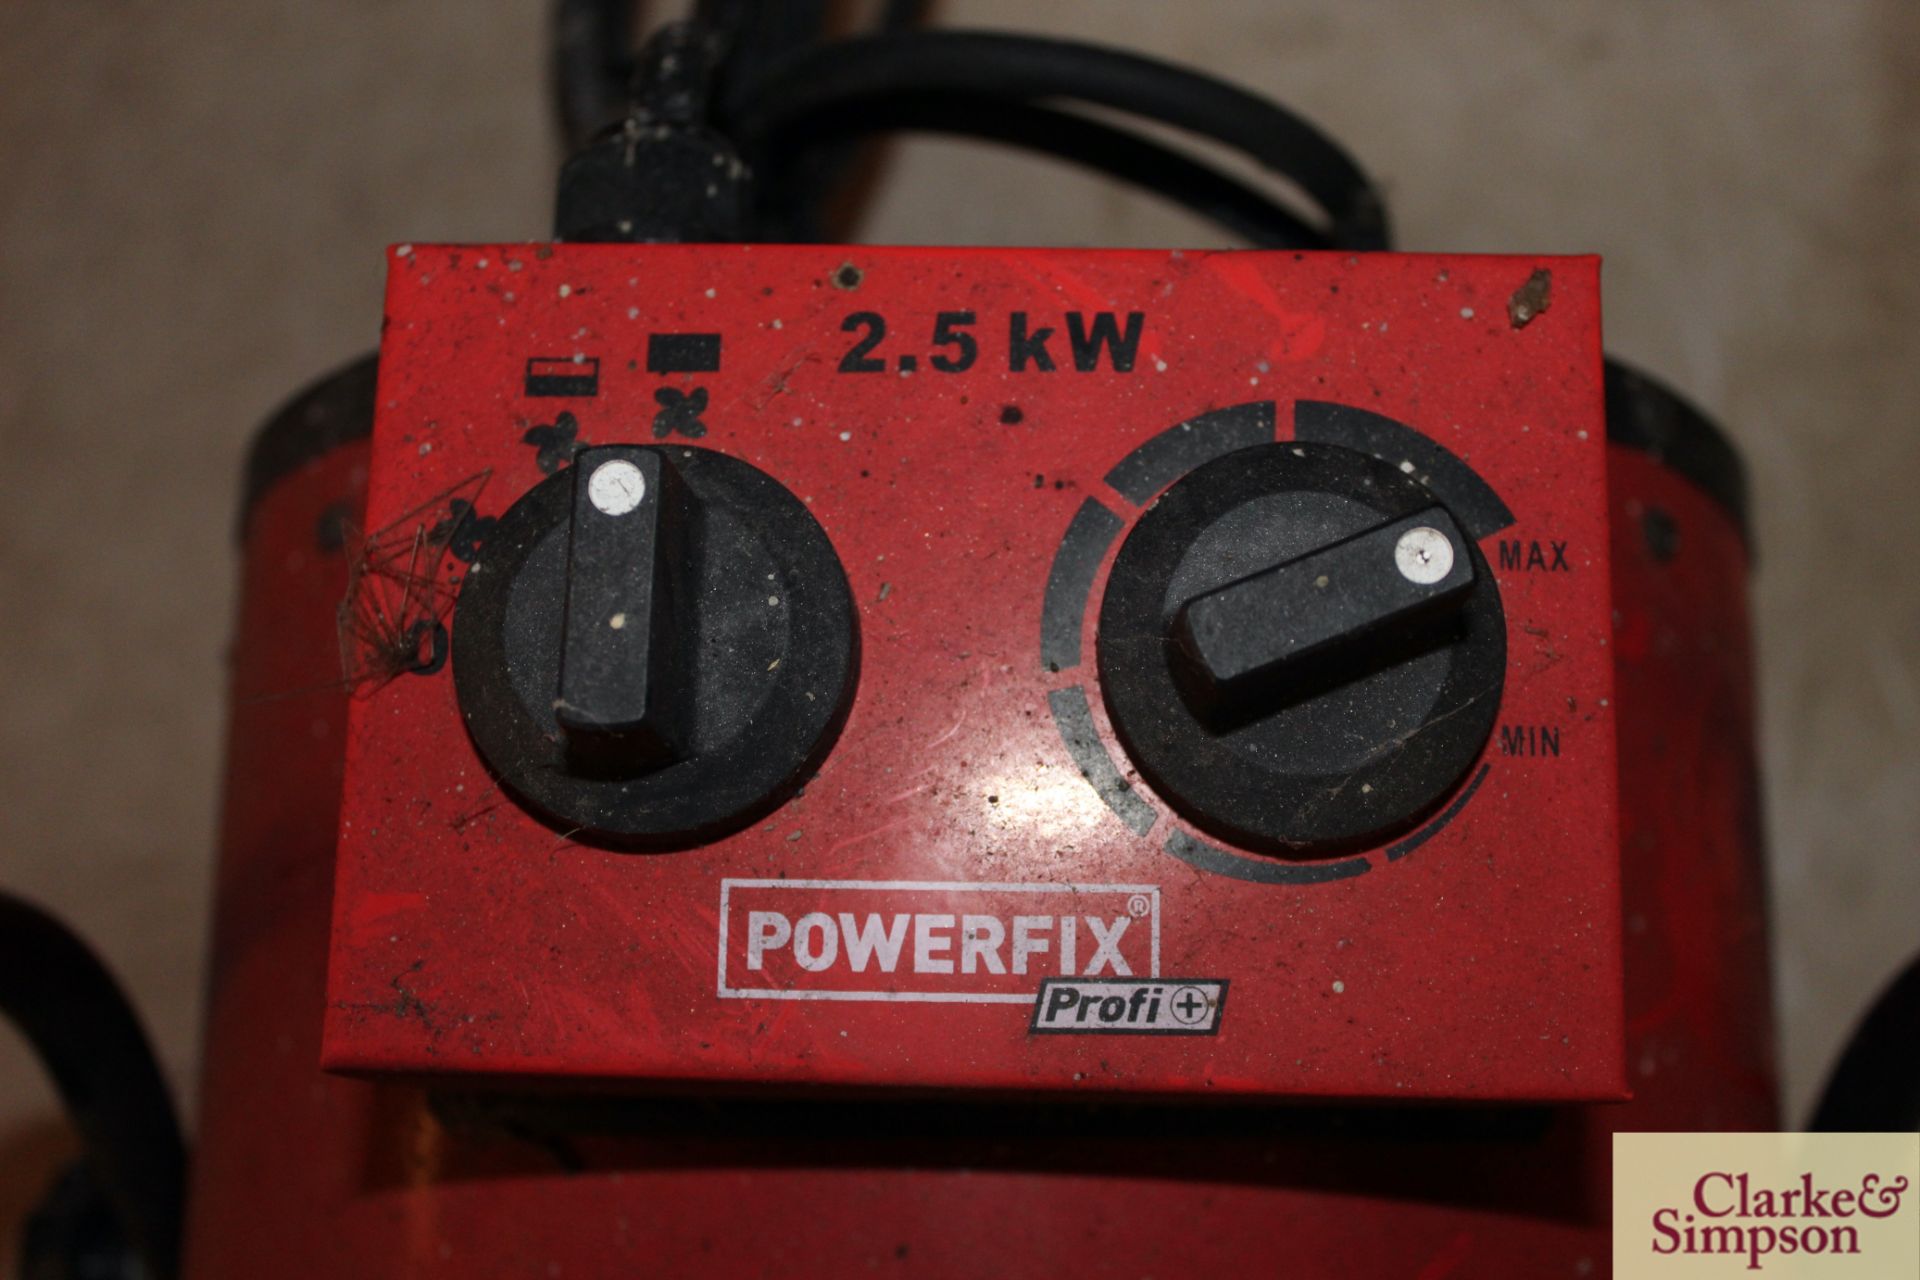 Powerflex fan heater. - Image 3 of 3